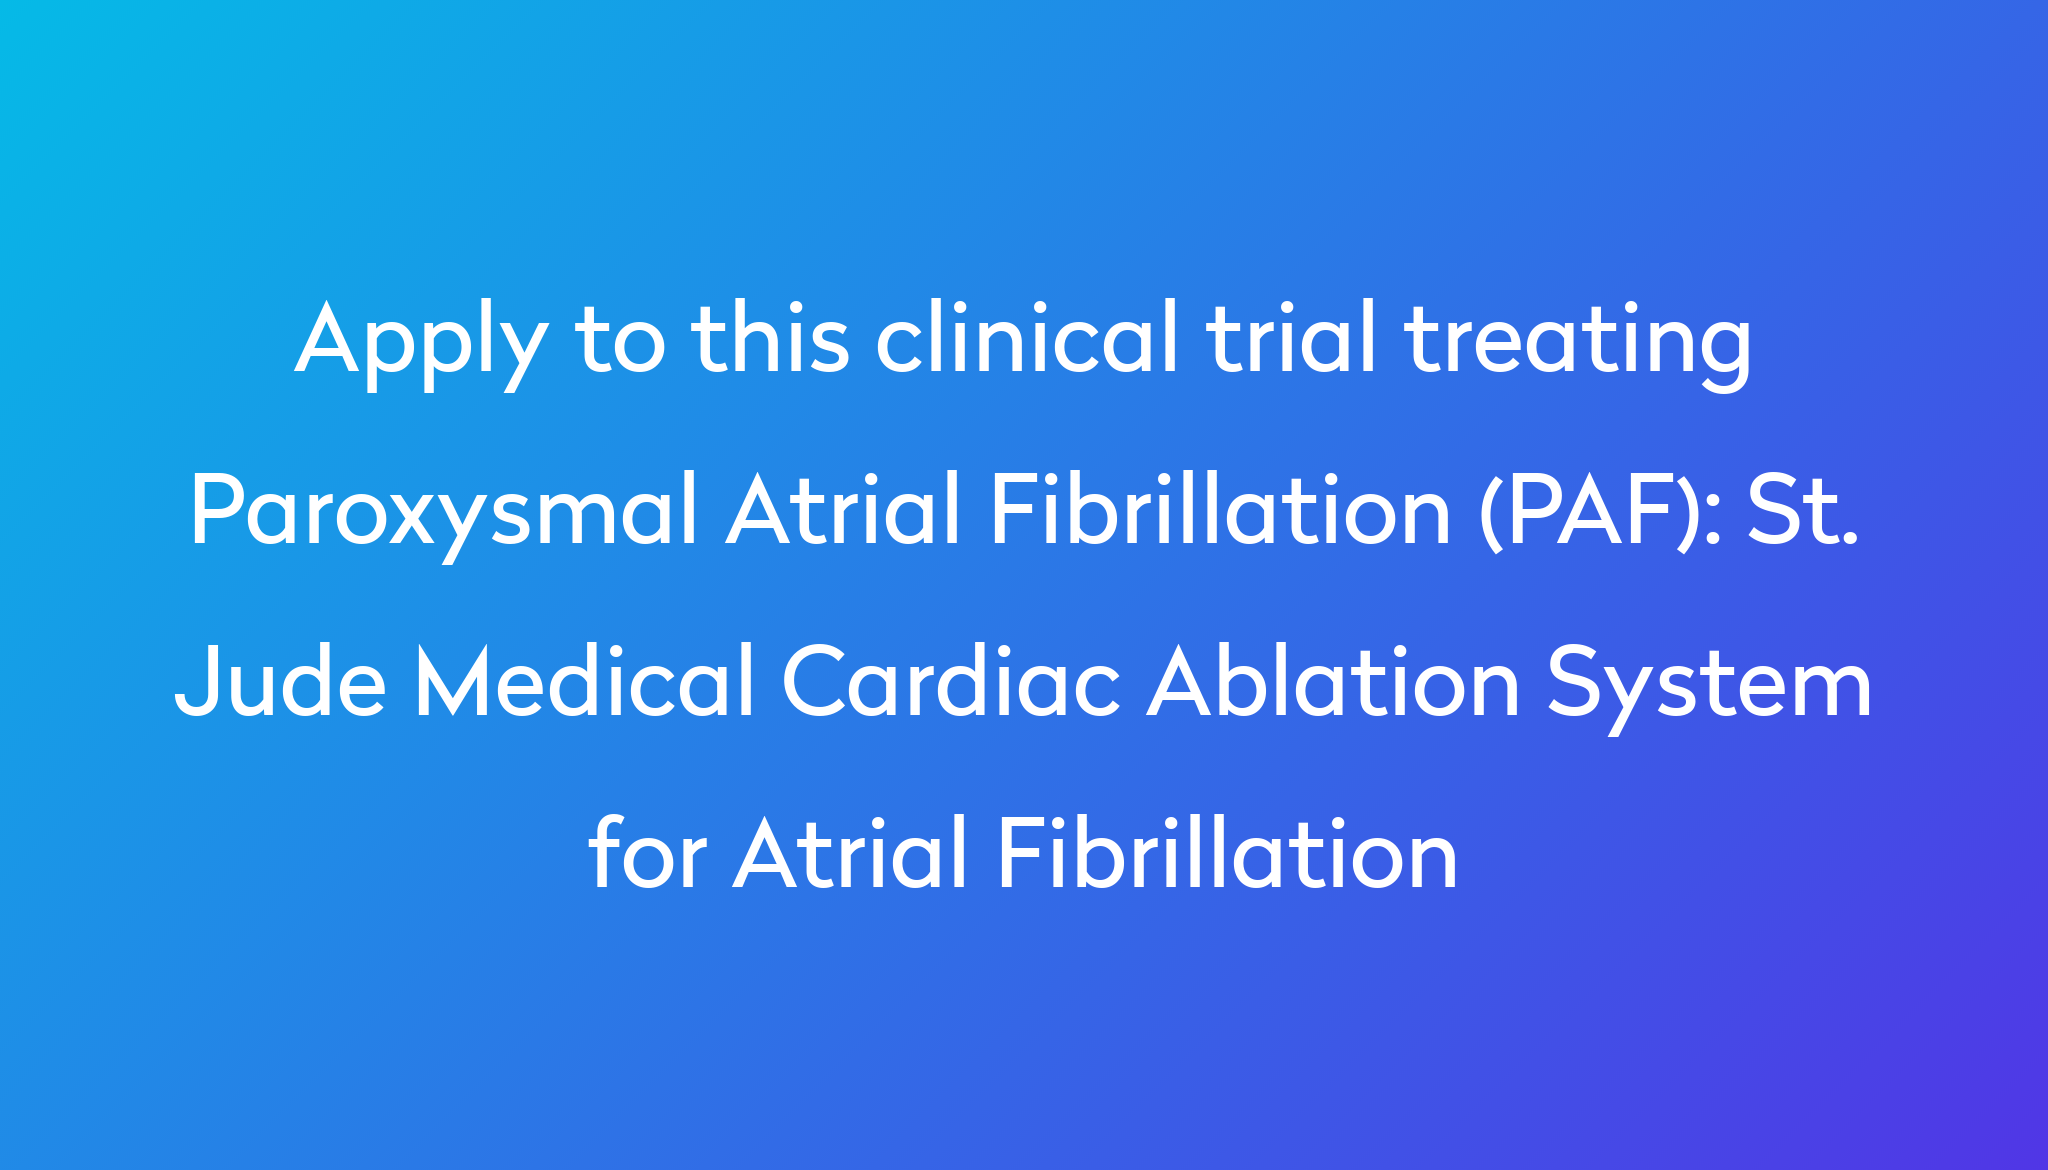 St. Jude Medical Cardiac Ablation System for Atrial Fibrillation